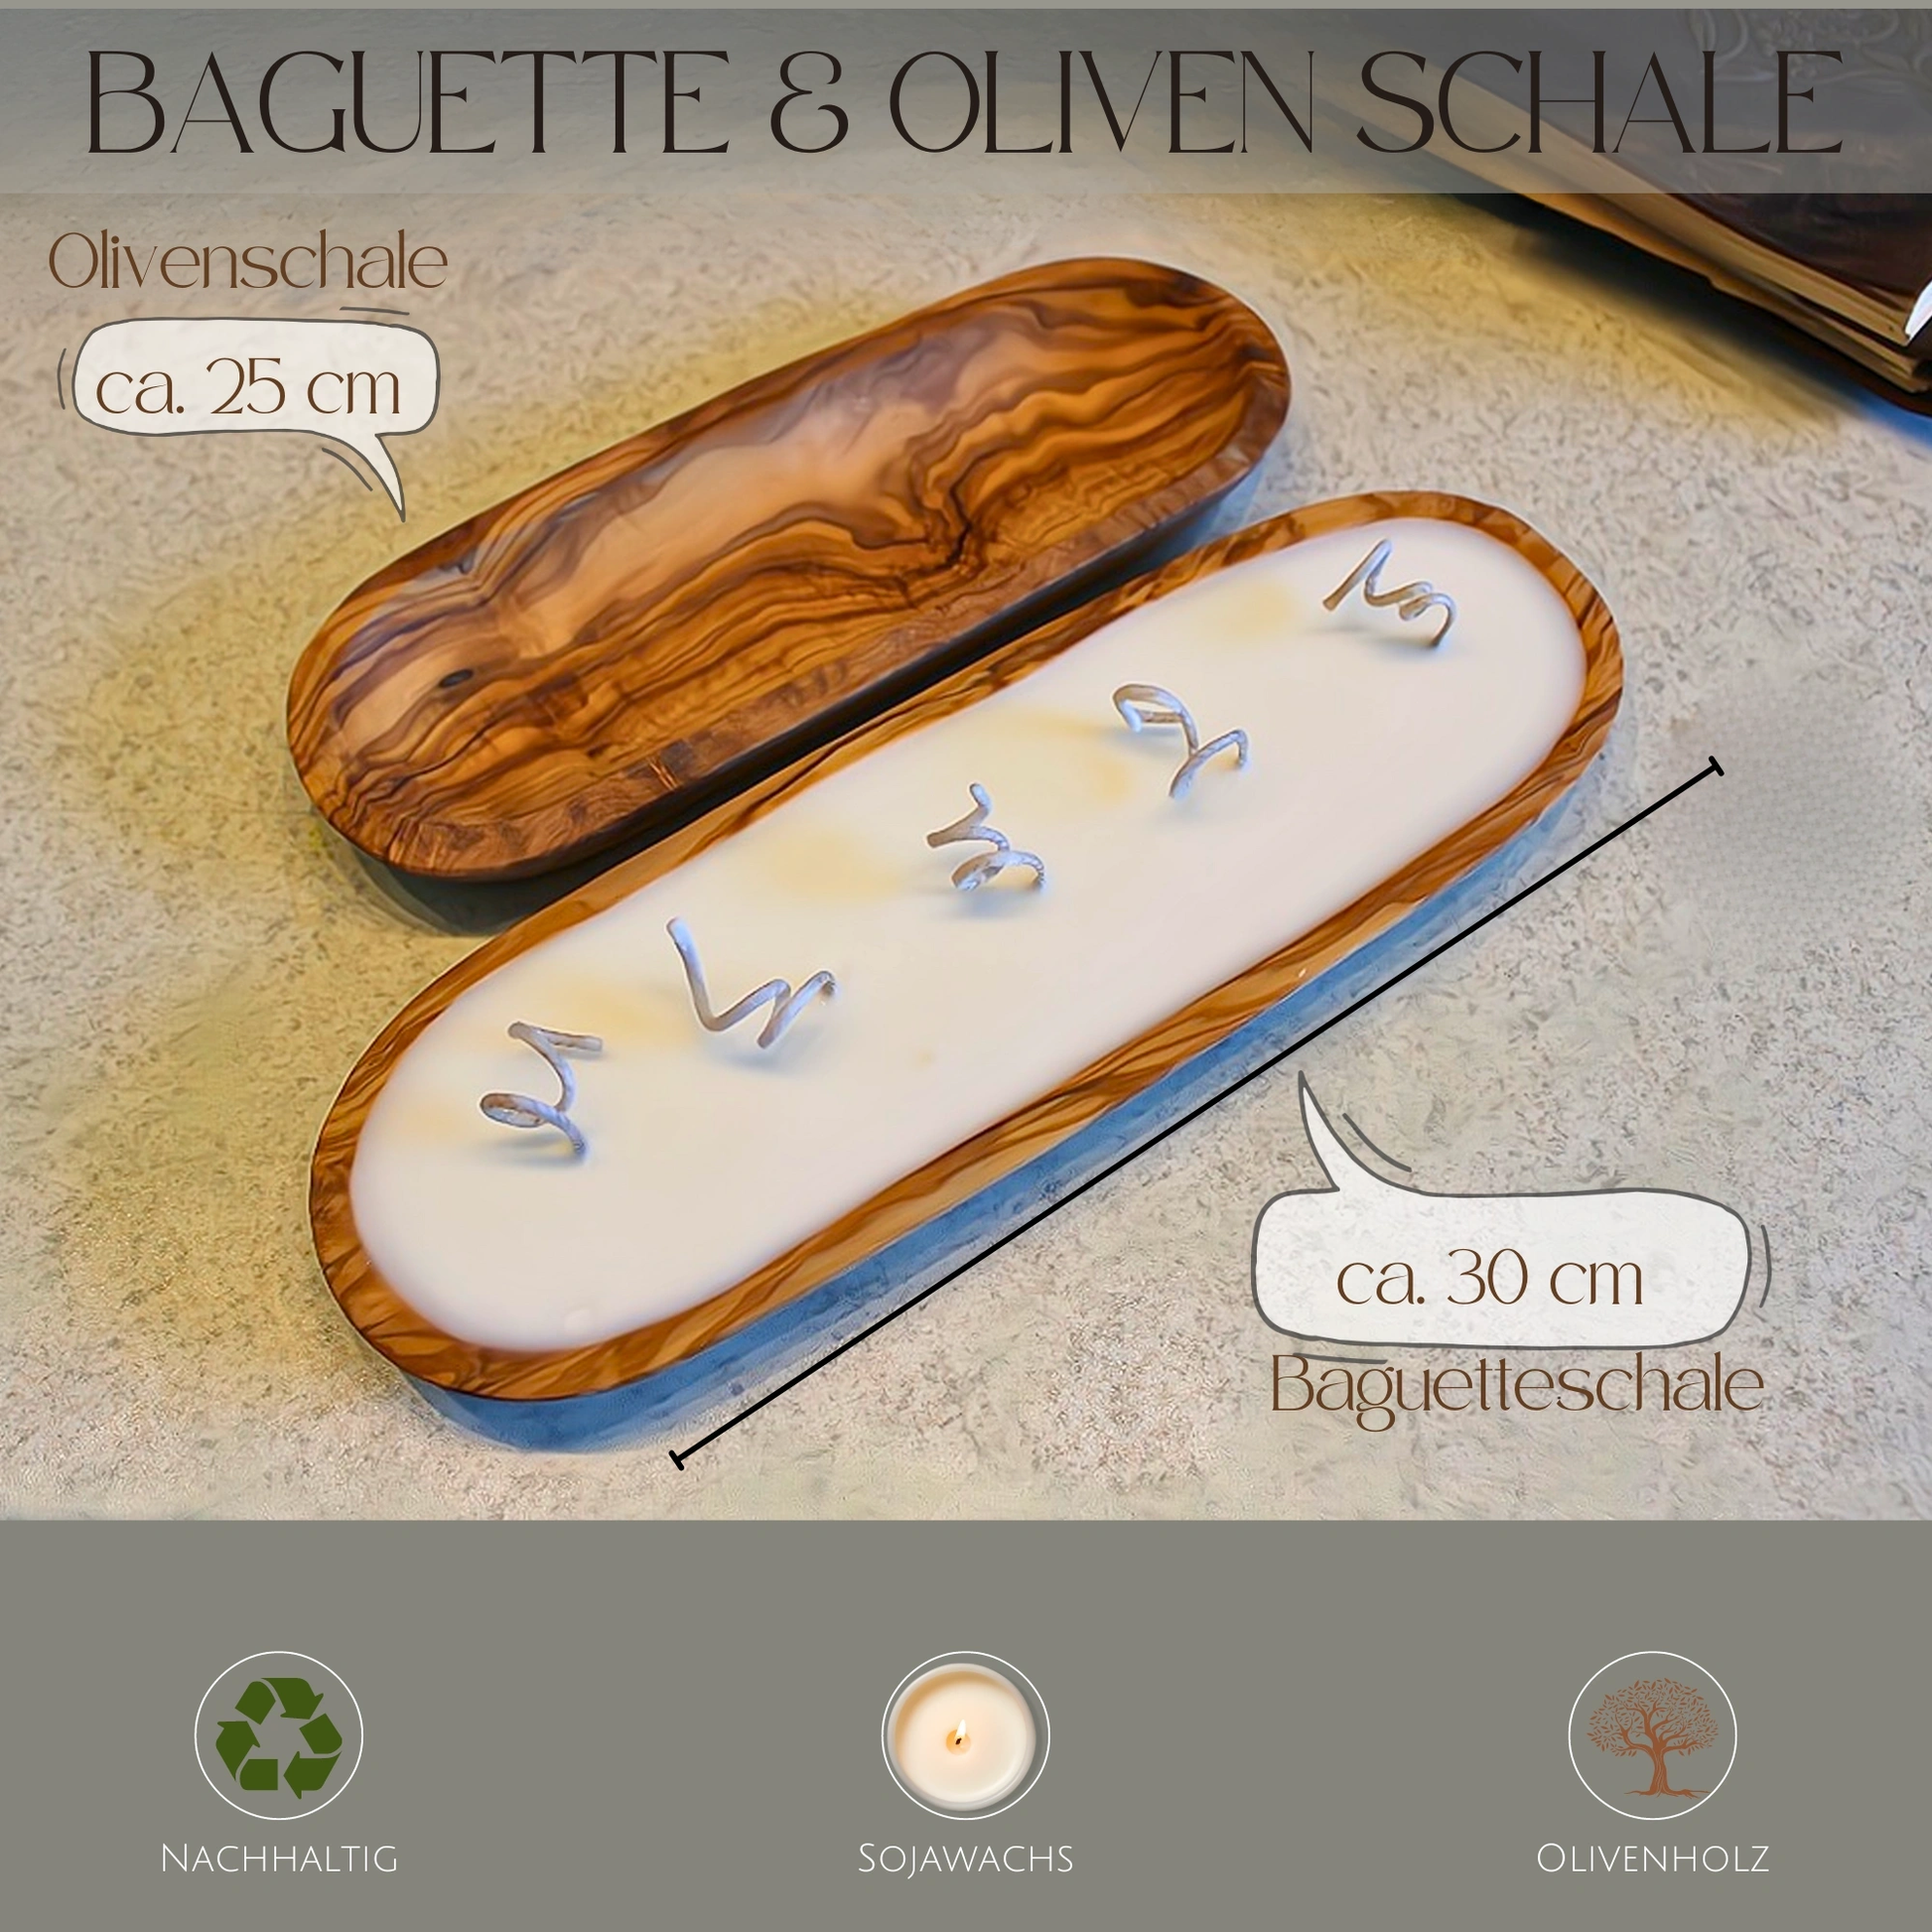 Sojawachskerze in Olivenholzschale "Baguette" 30 cm Lavendel